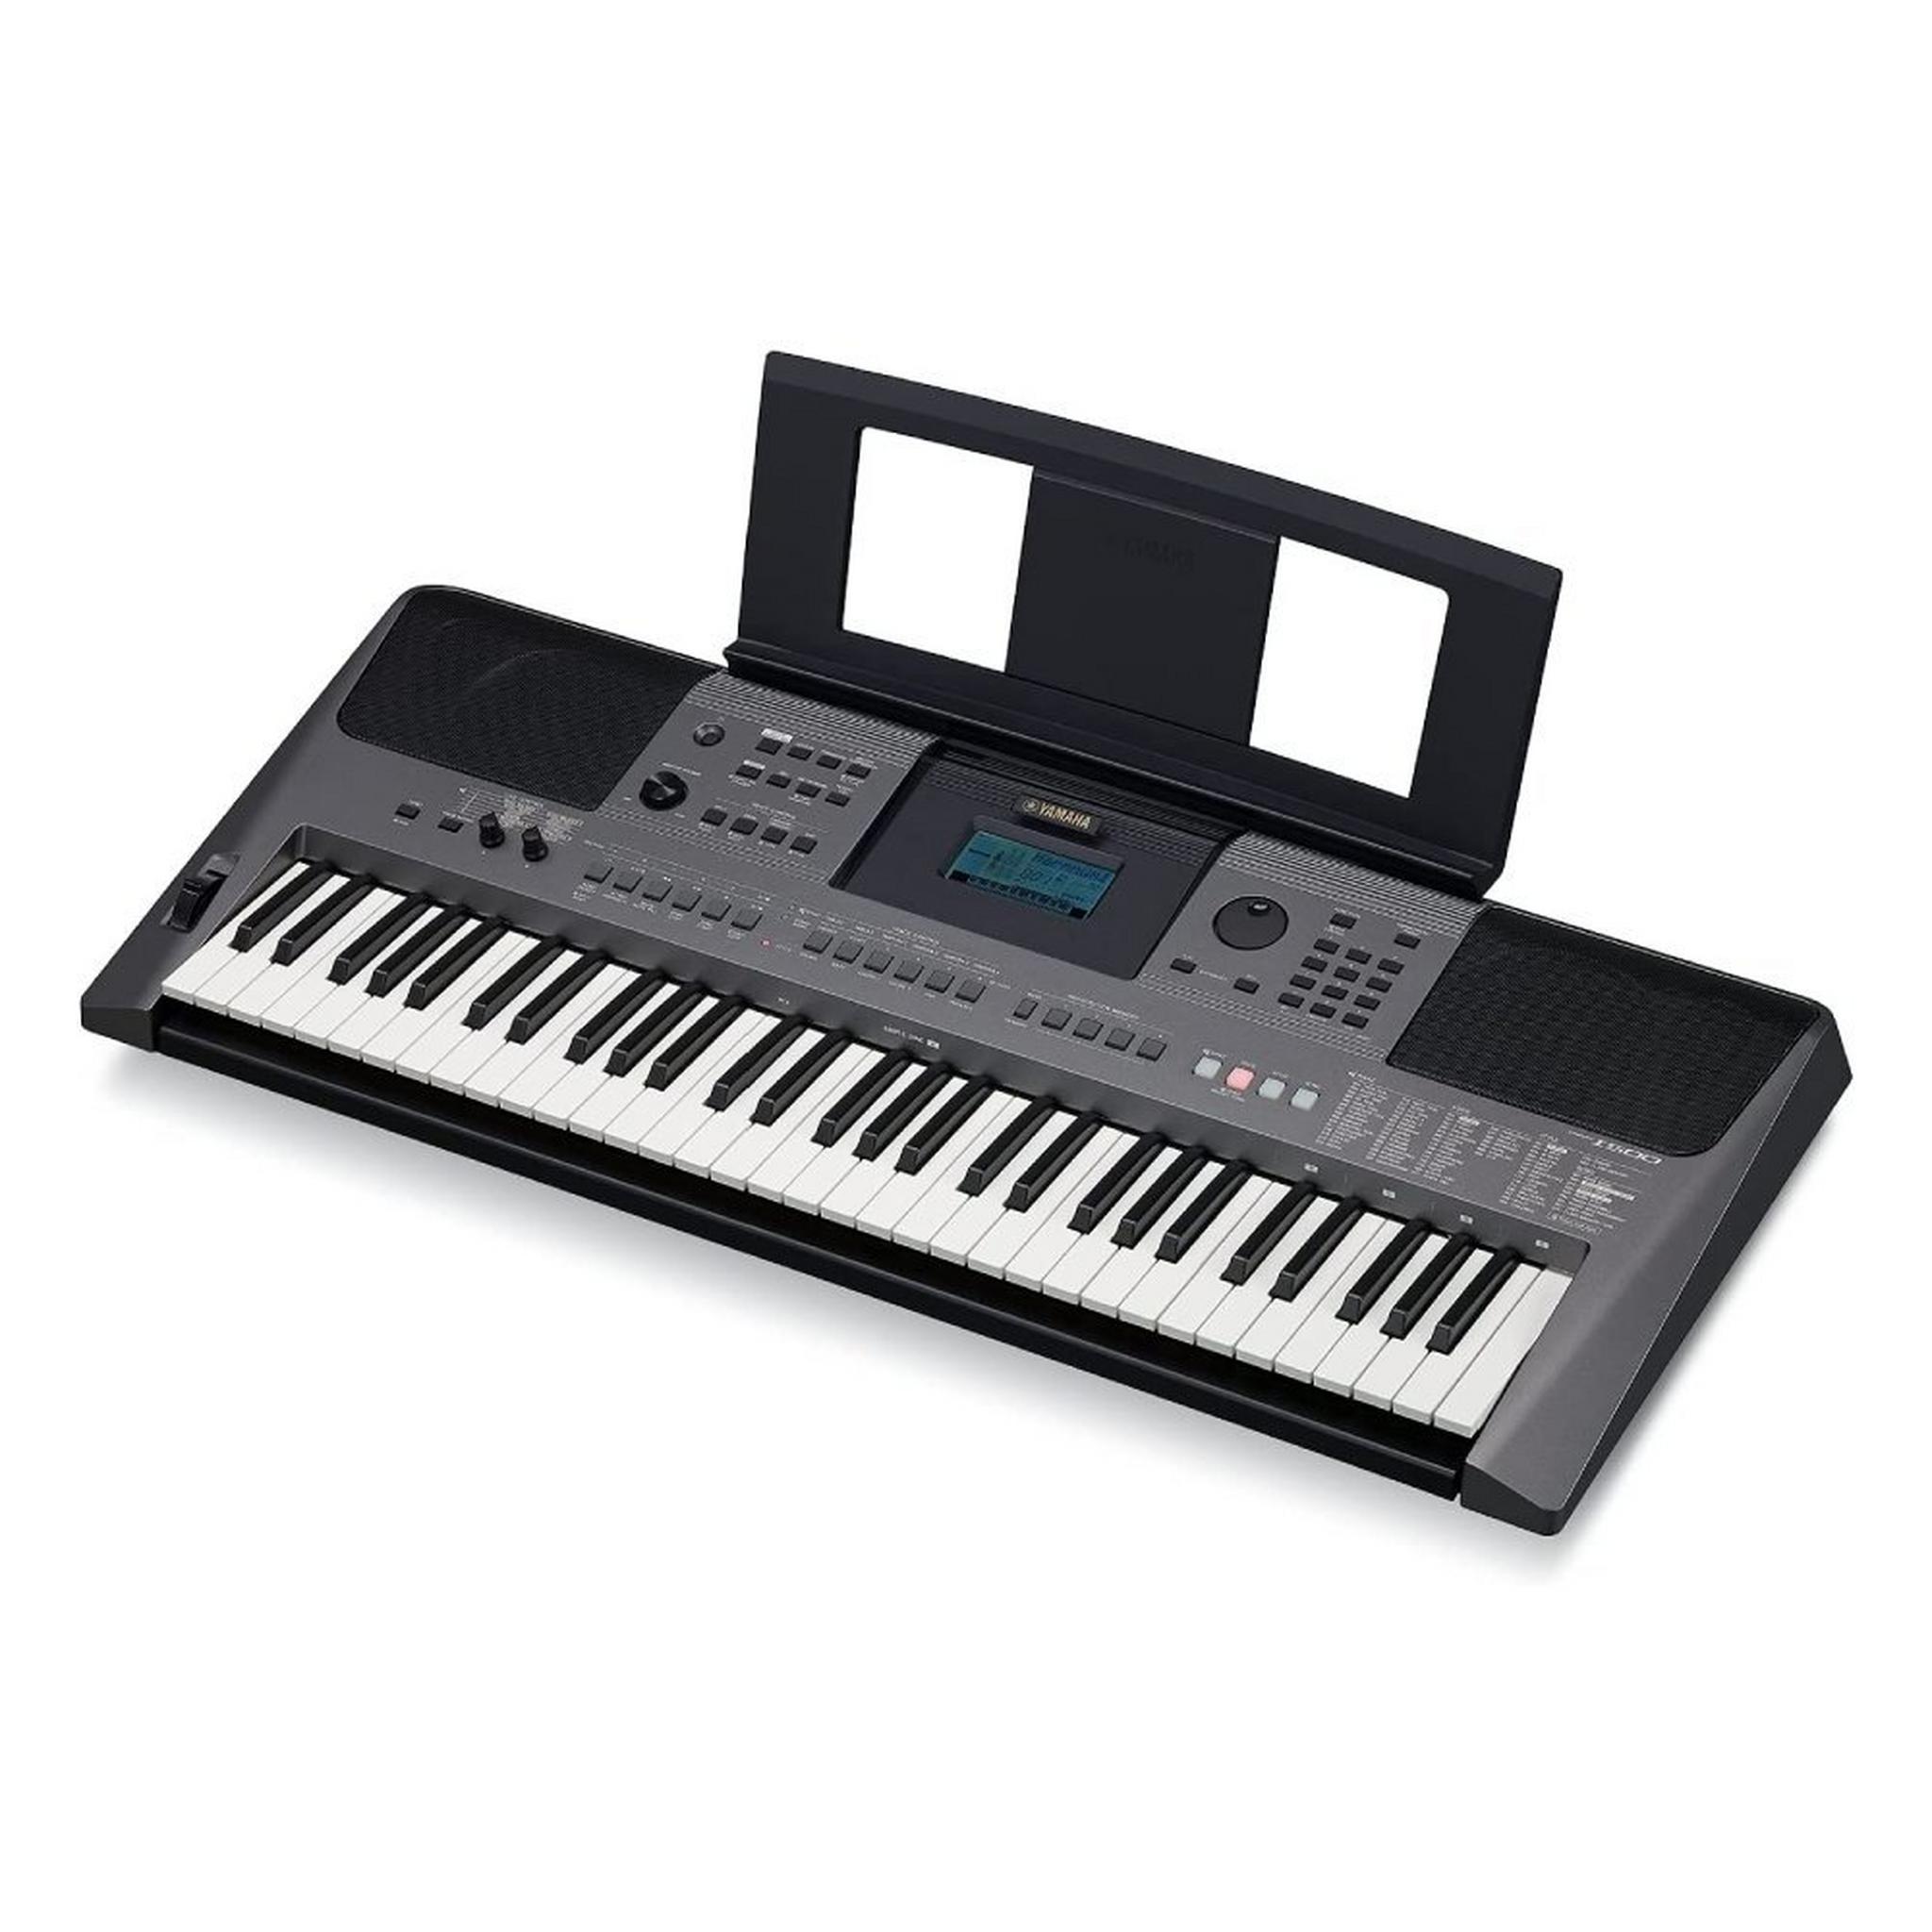 لوحة مفاتيح موسيقية ياماها - 61 مفتاح (PSR-I500) هندي